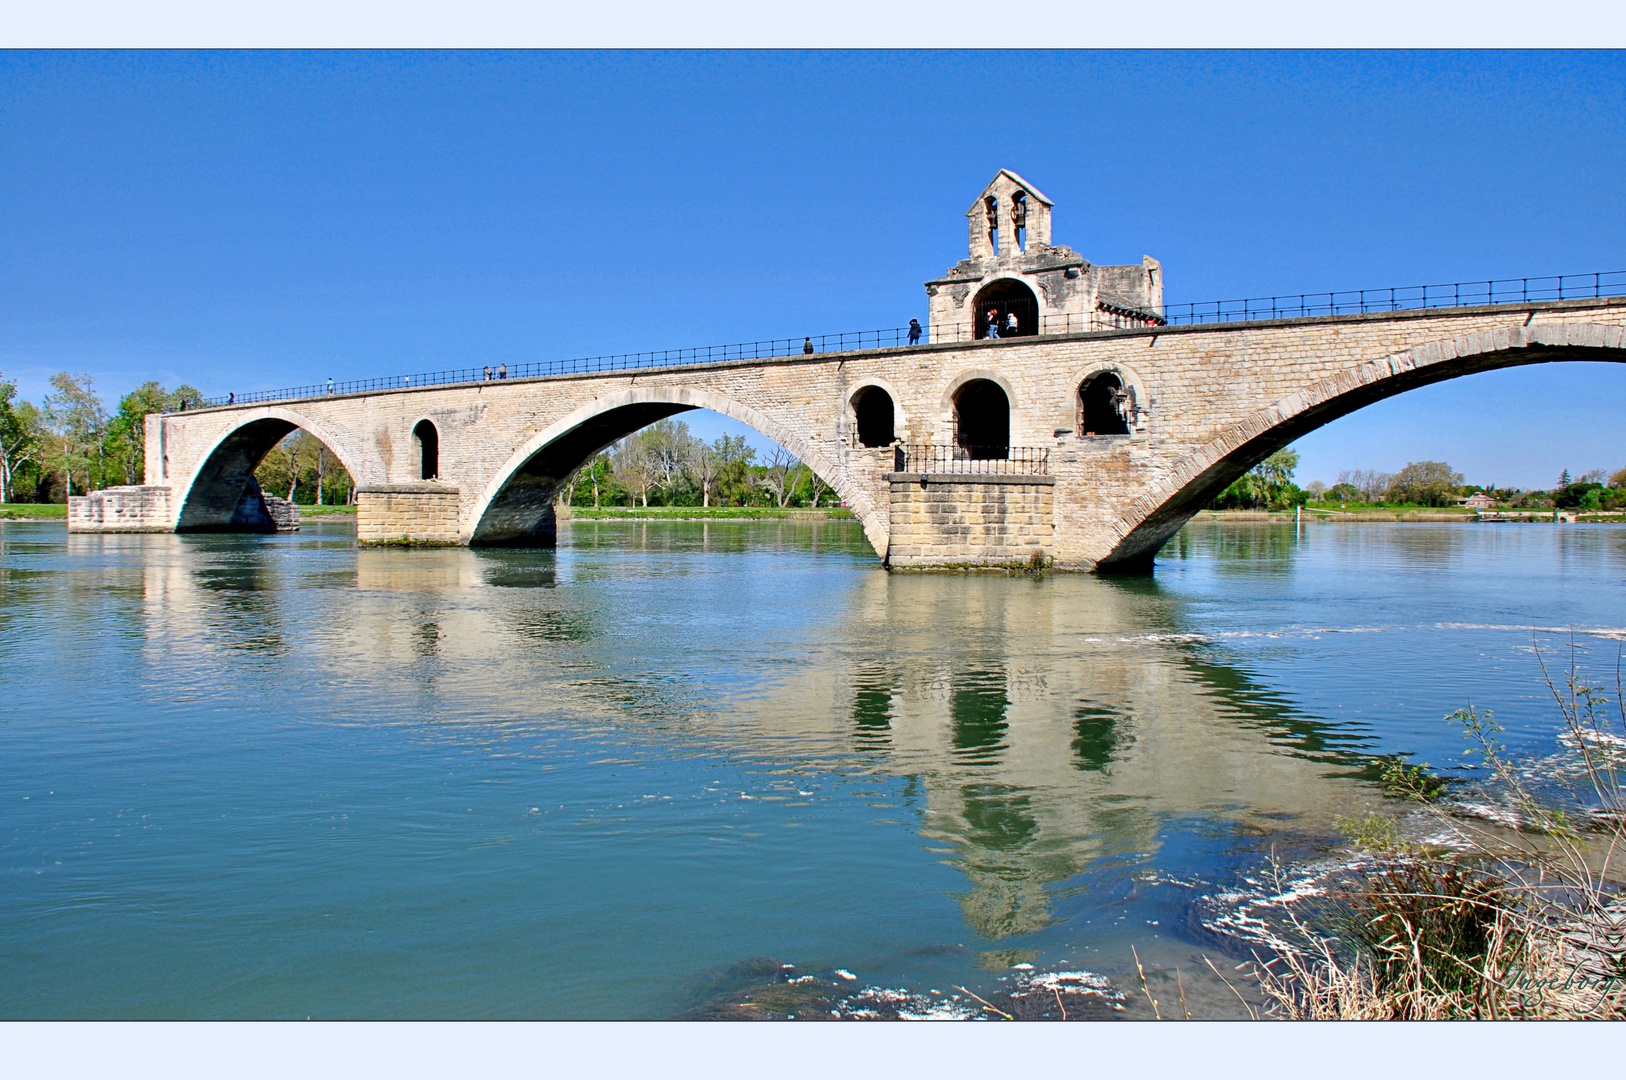 # Pont Saint-Bénézet #